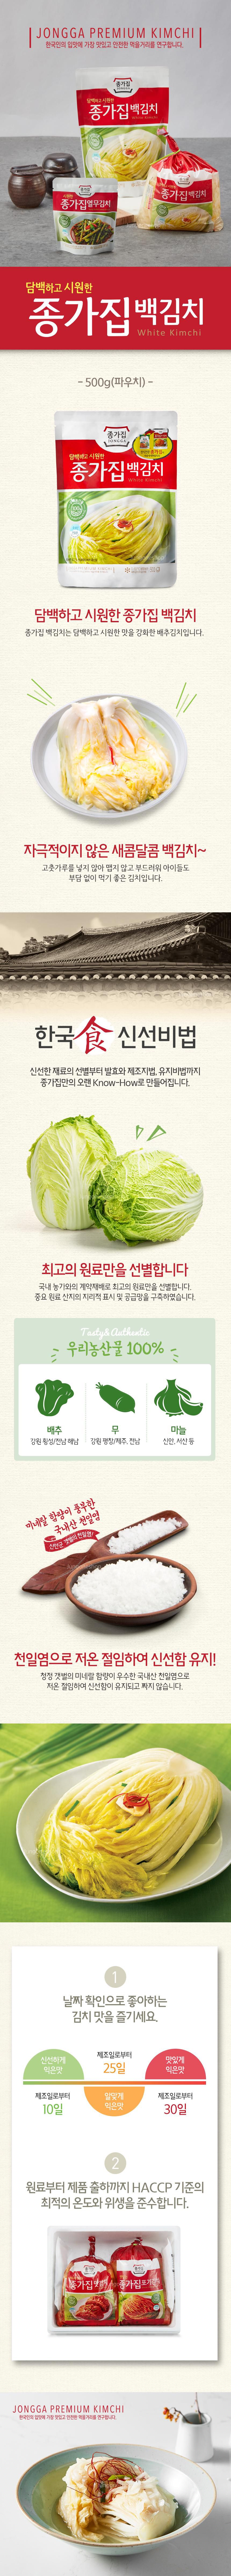 韓國食品-[종가집] 백김치 500g